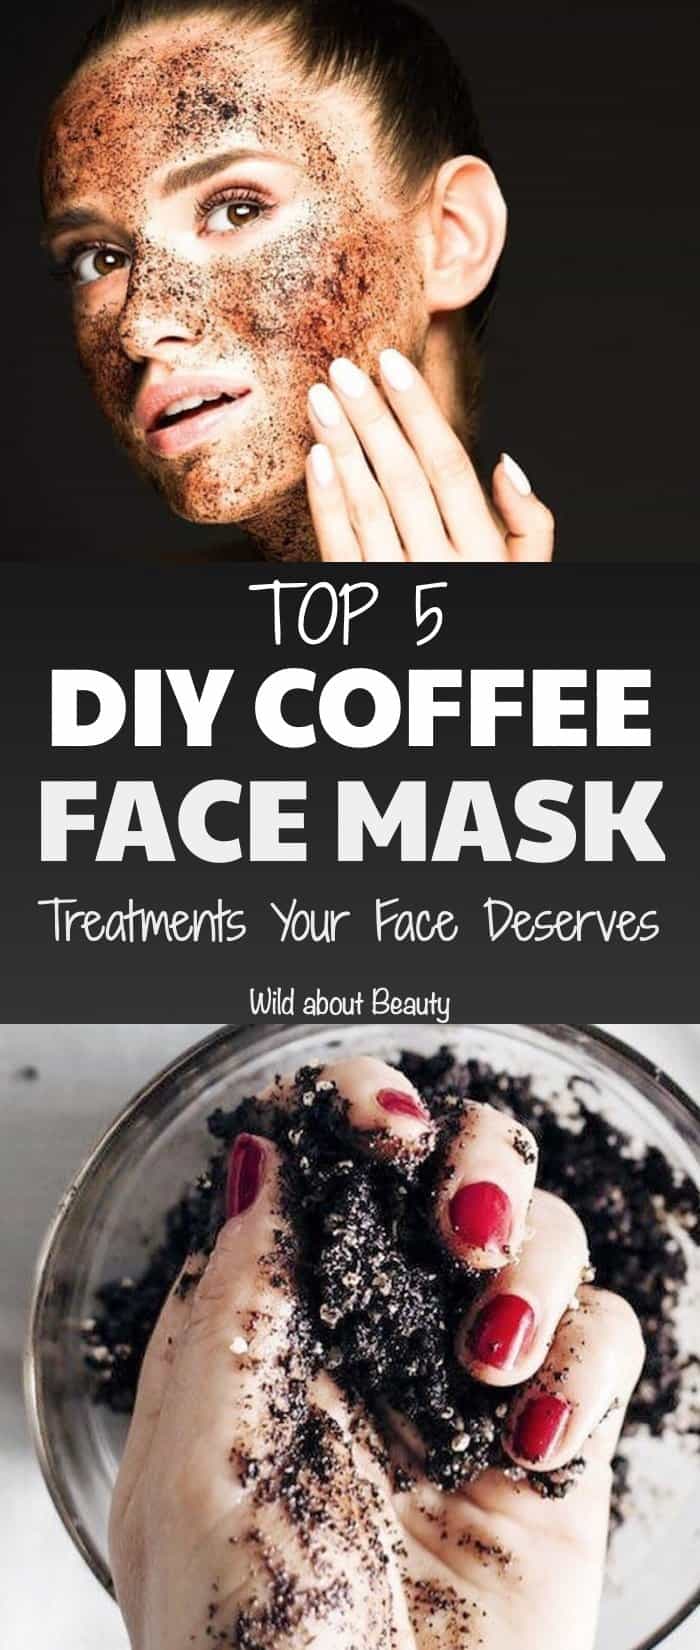 DIY Coffee mask treatments